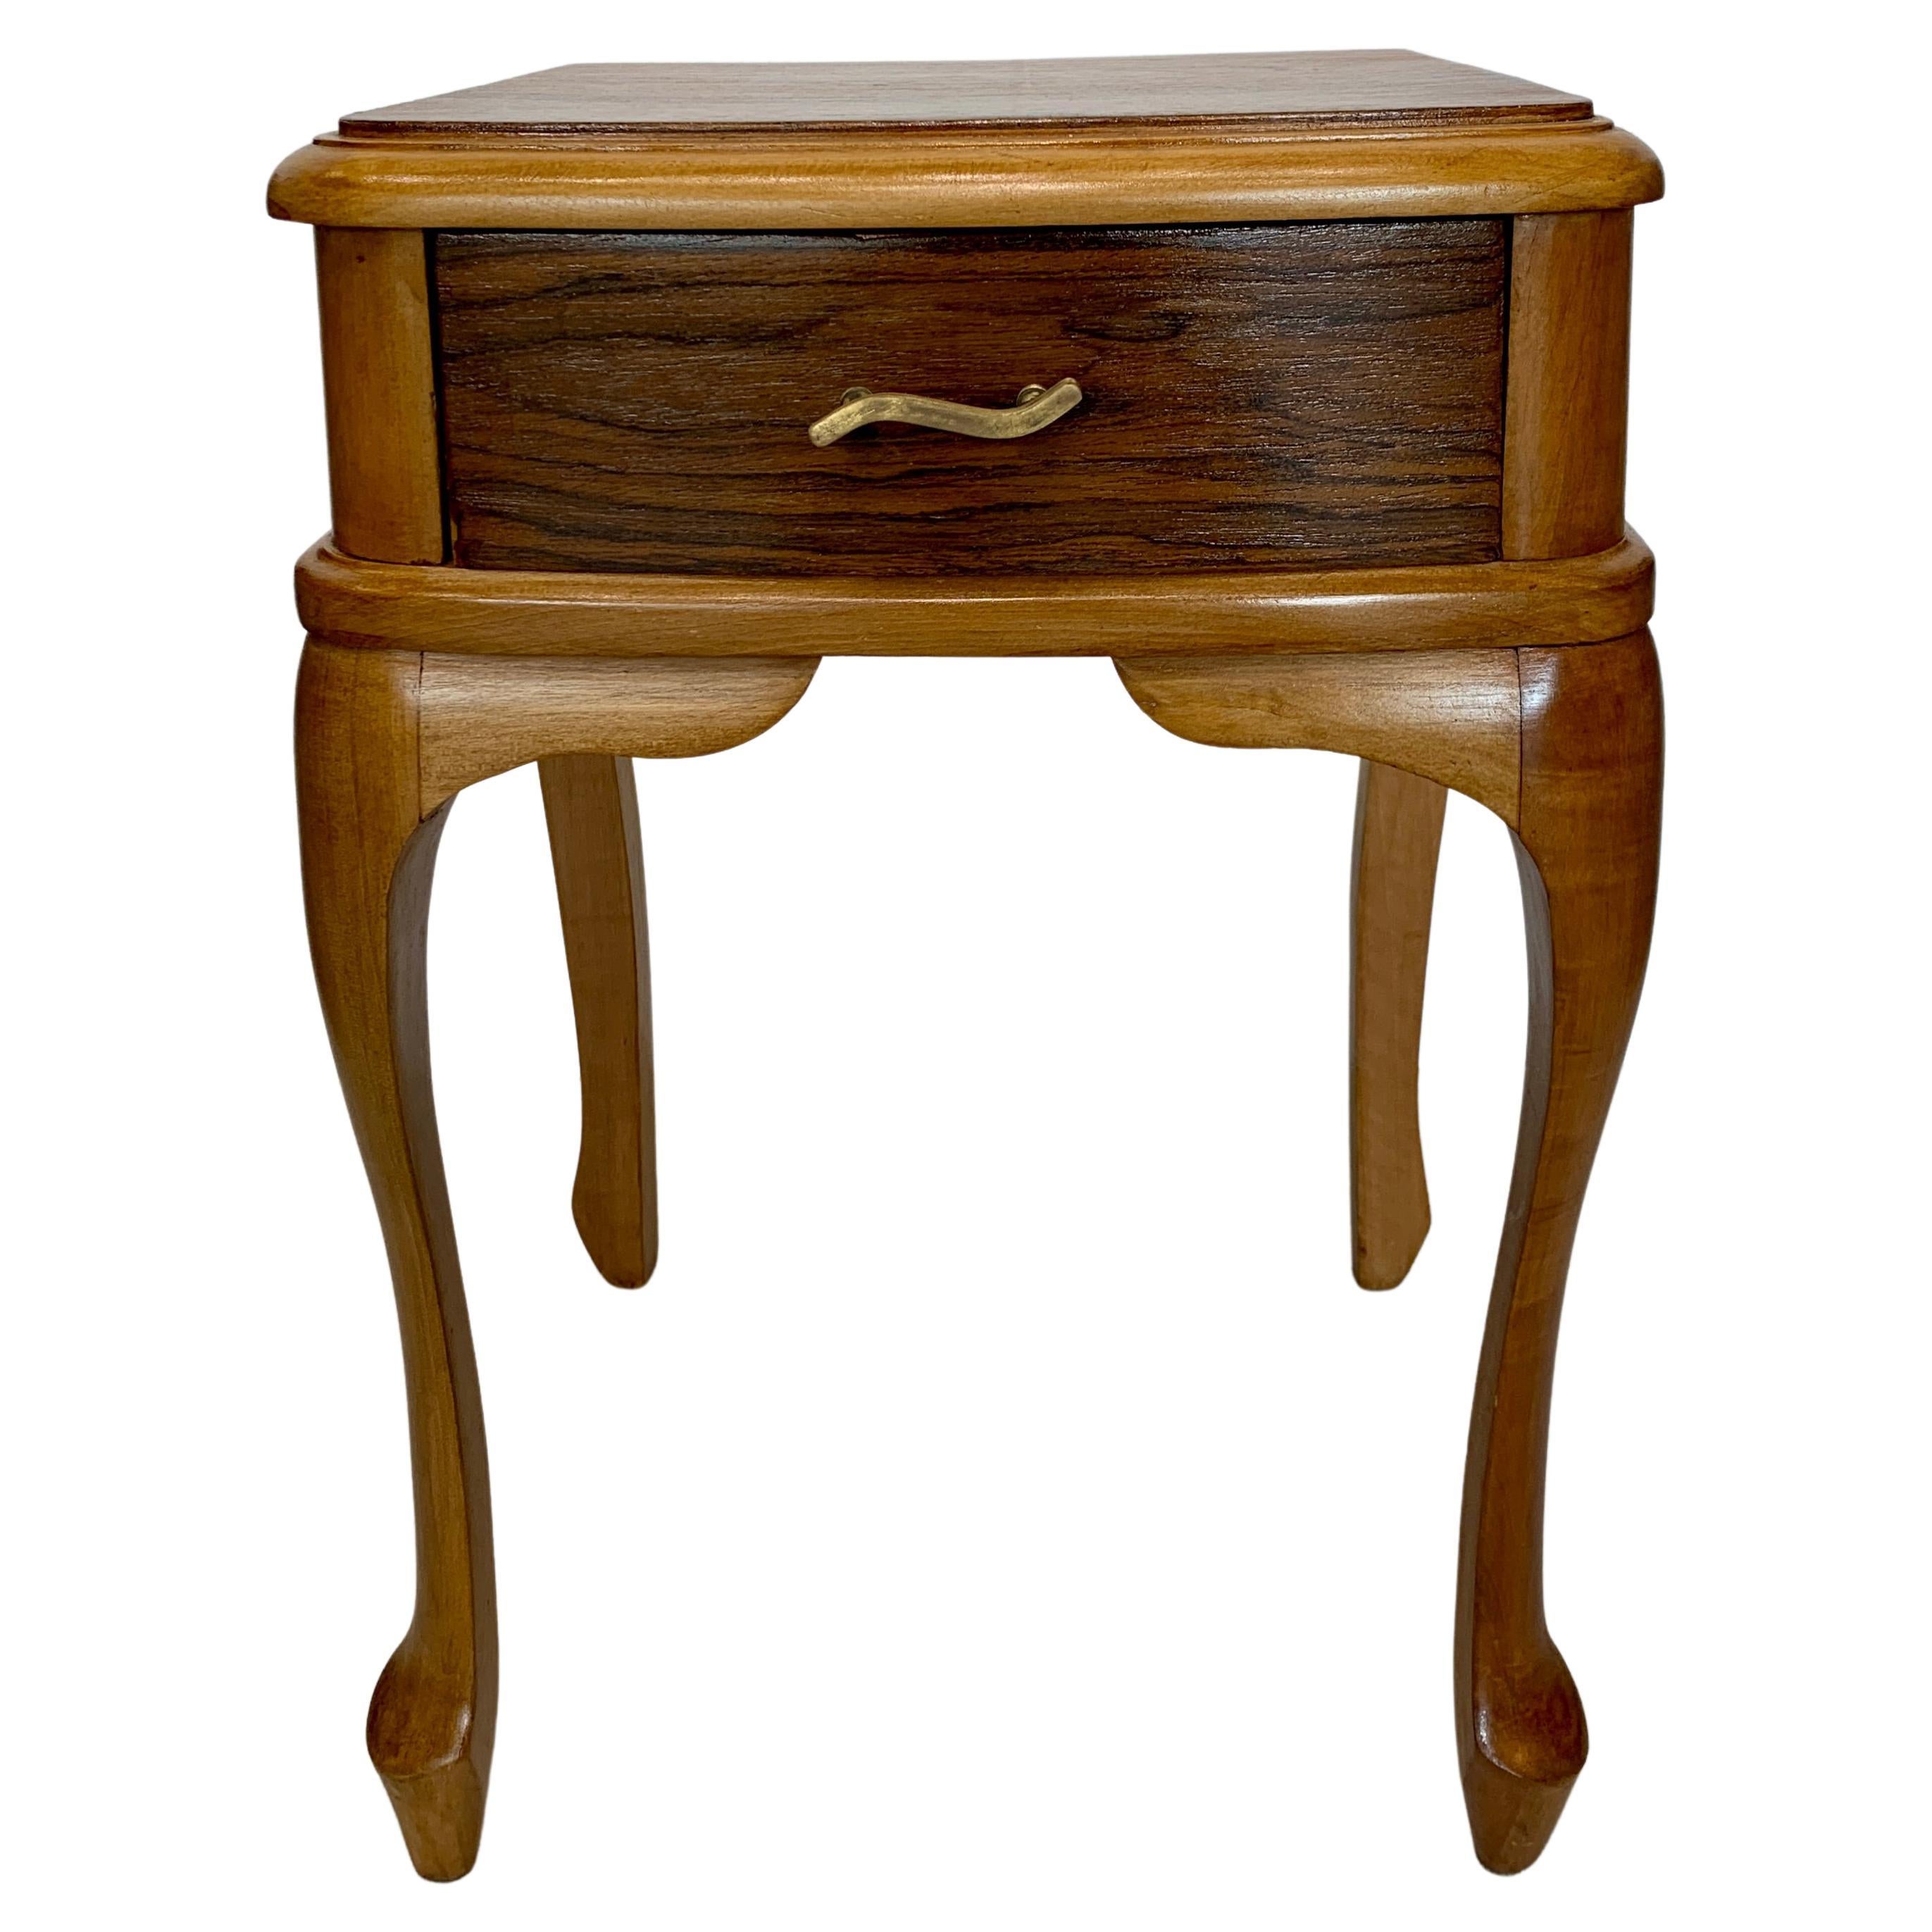 Les tables de chevet brésiliennes des années 1950 sont des pièces de mobilier magnifiques et raffinées. Elles sont fabriquées avec deux essences de bois soigneusement sélectionnées, l'une ayant une teinte plus claire et l'autre plus foncée. 

Les